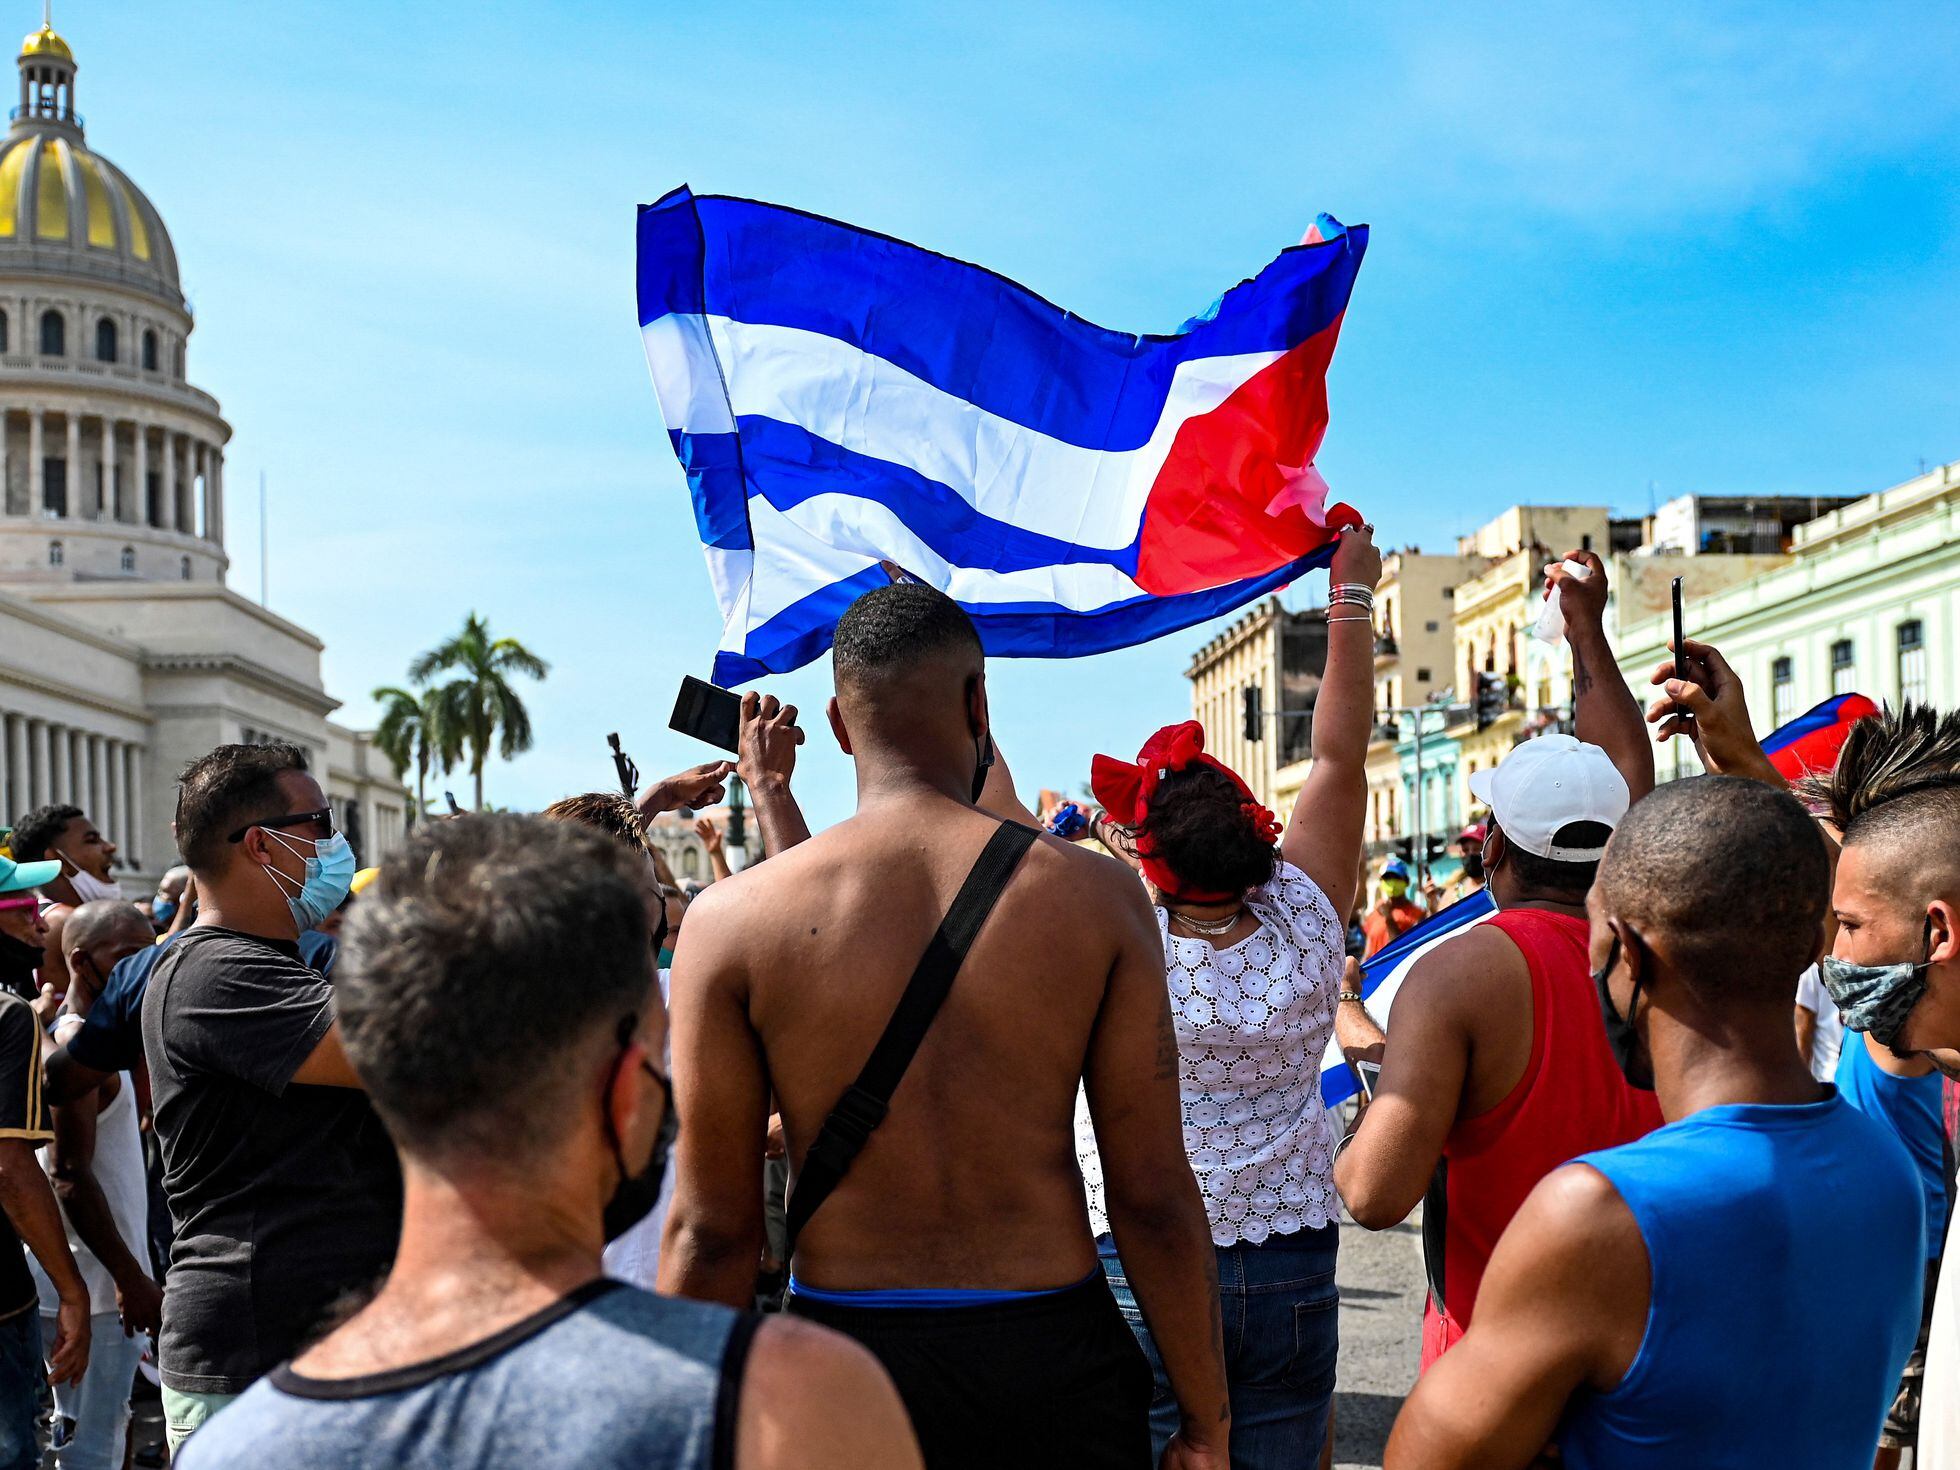 Radio Havana Cuba  Time da segunda divisão do futebol alemão ratifica  postura antifascista